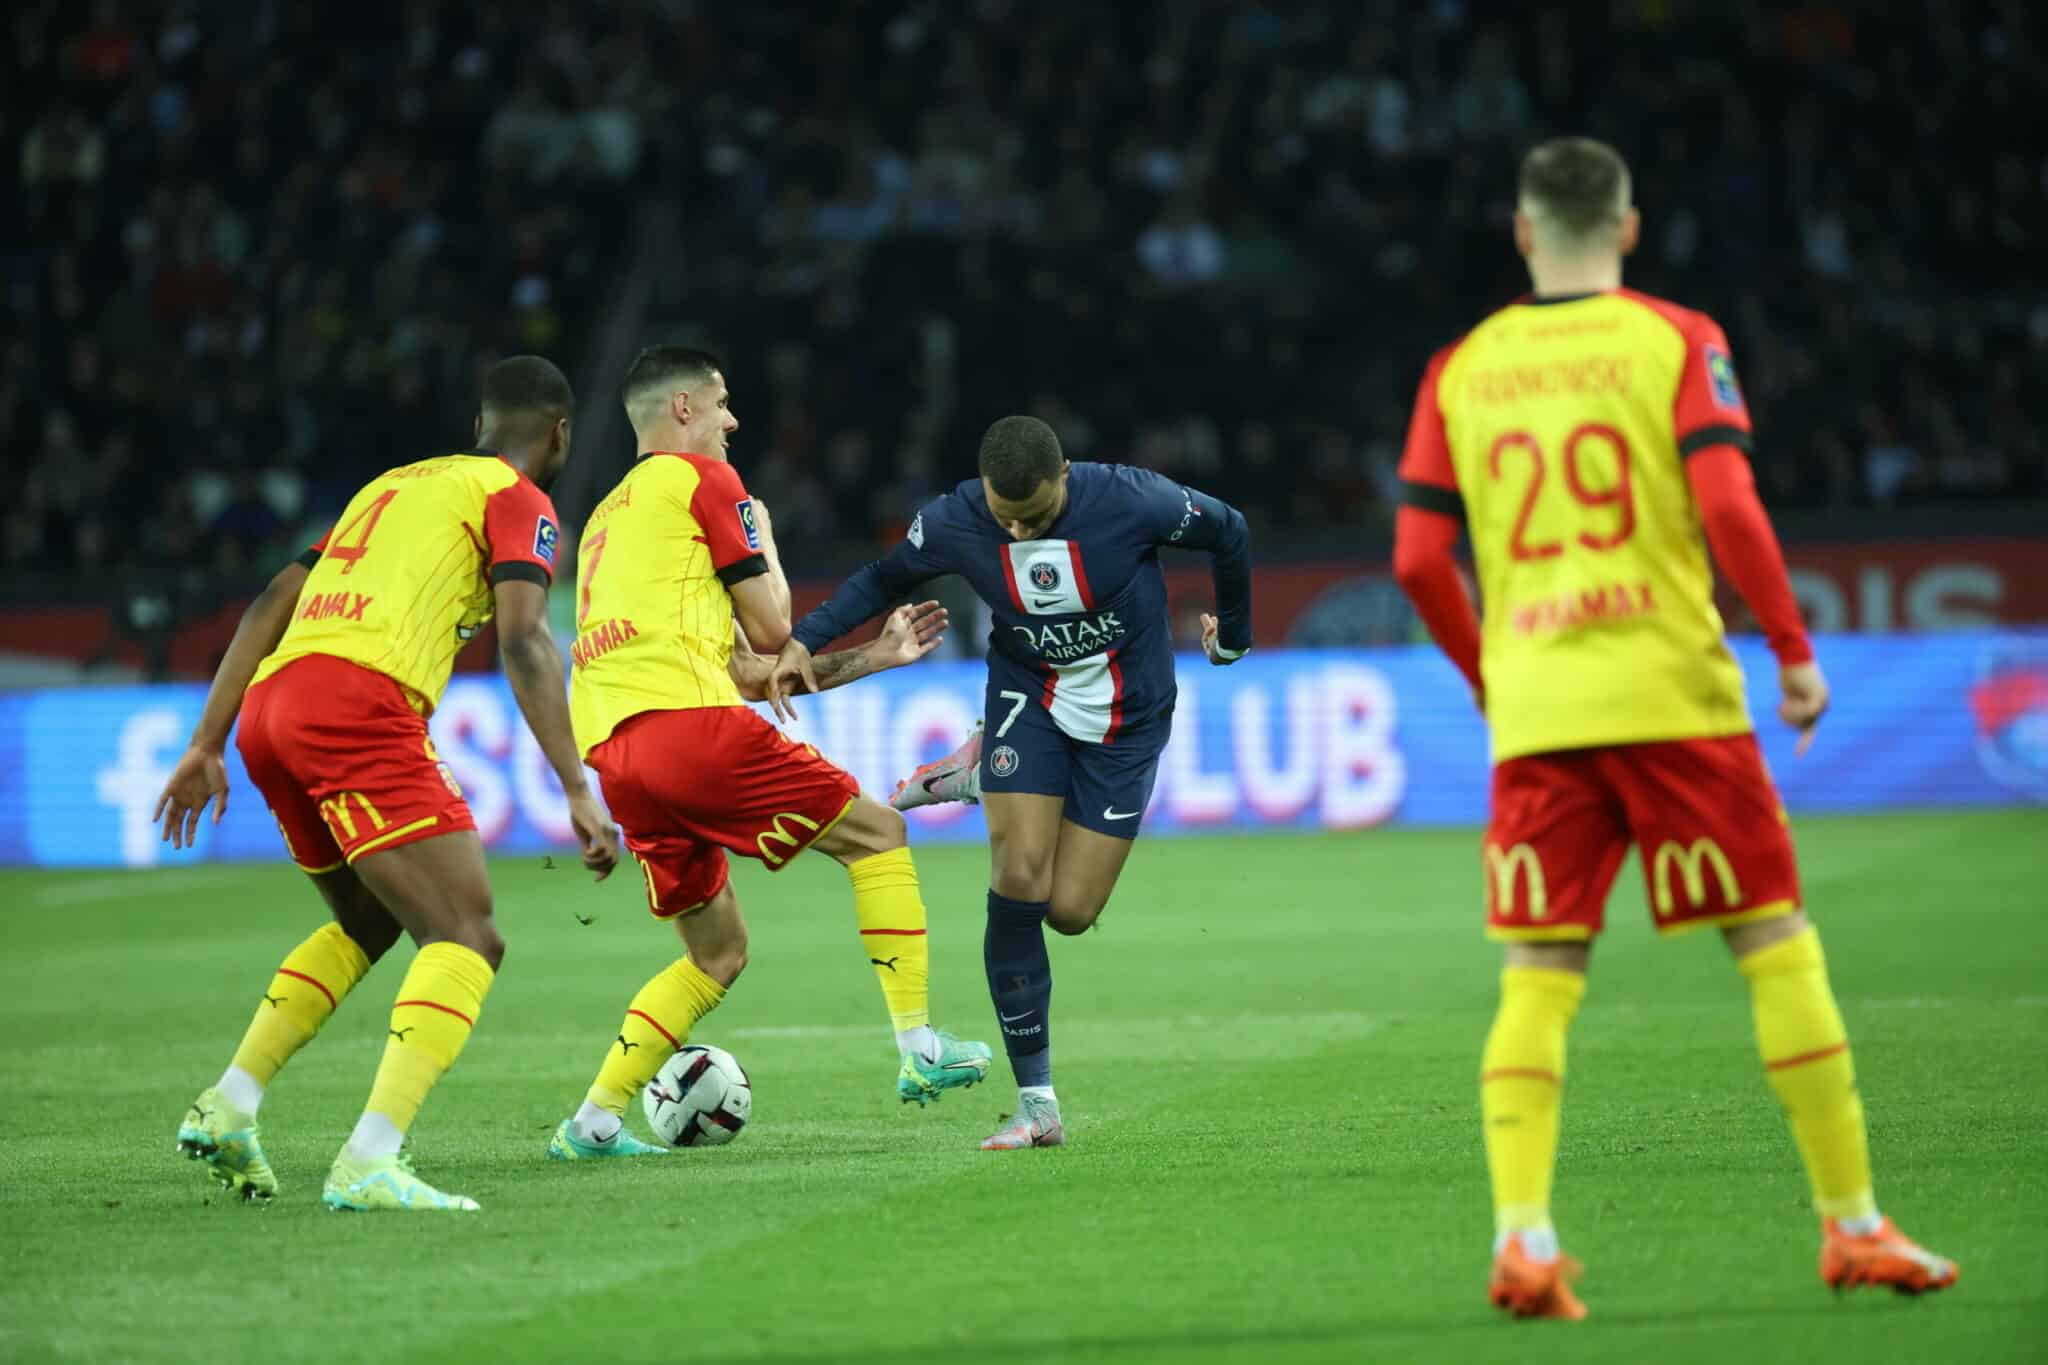  Asensio, Dembélé et Mbappé titulaires, les compositions officielles du choc PSG-Lens